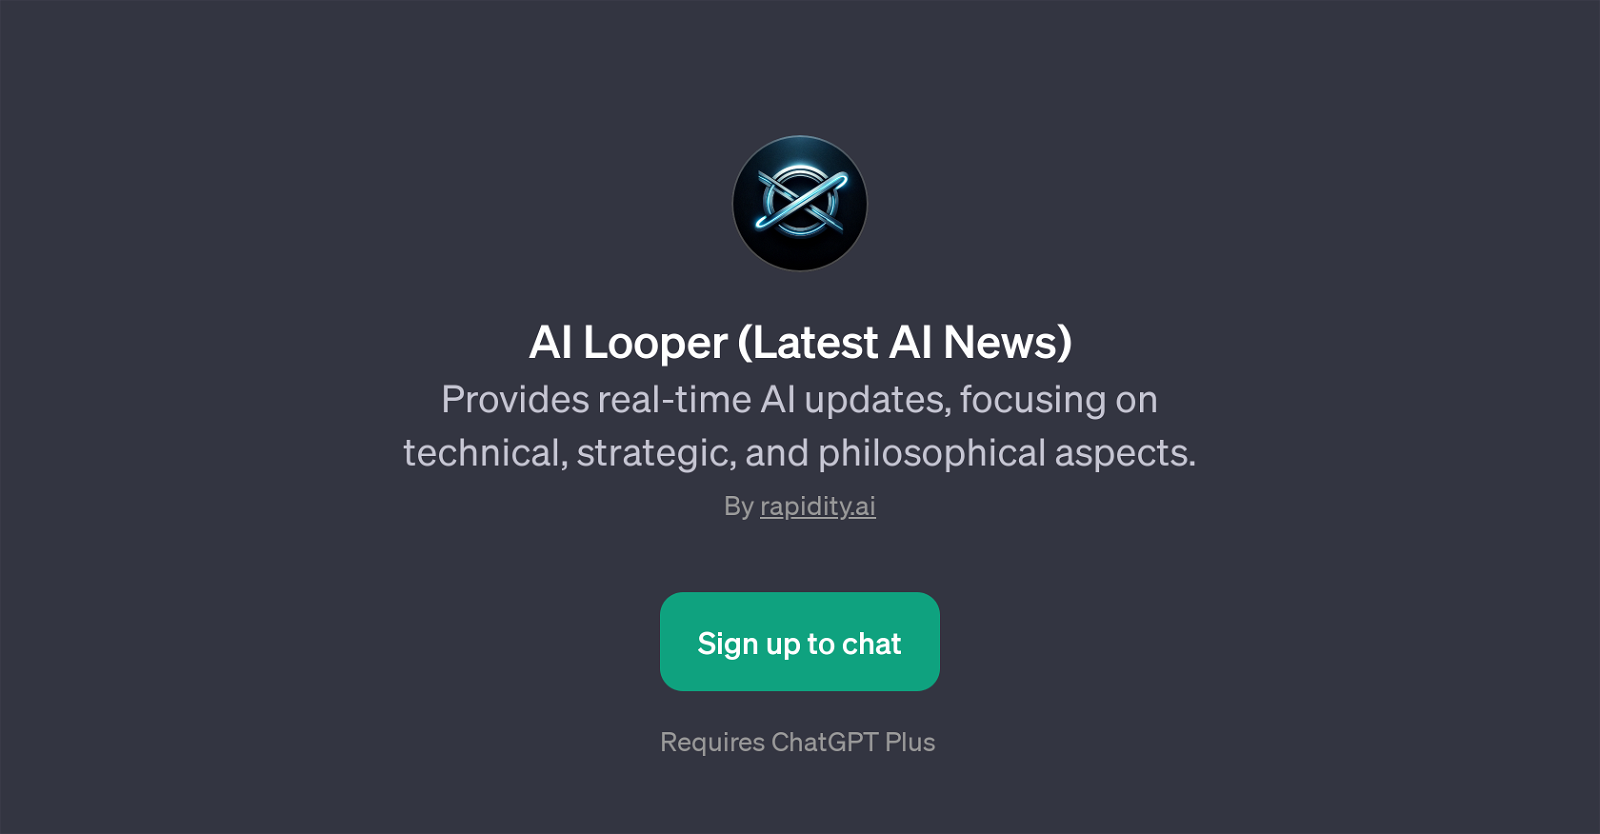 AI Looper (Latest AI News) website